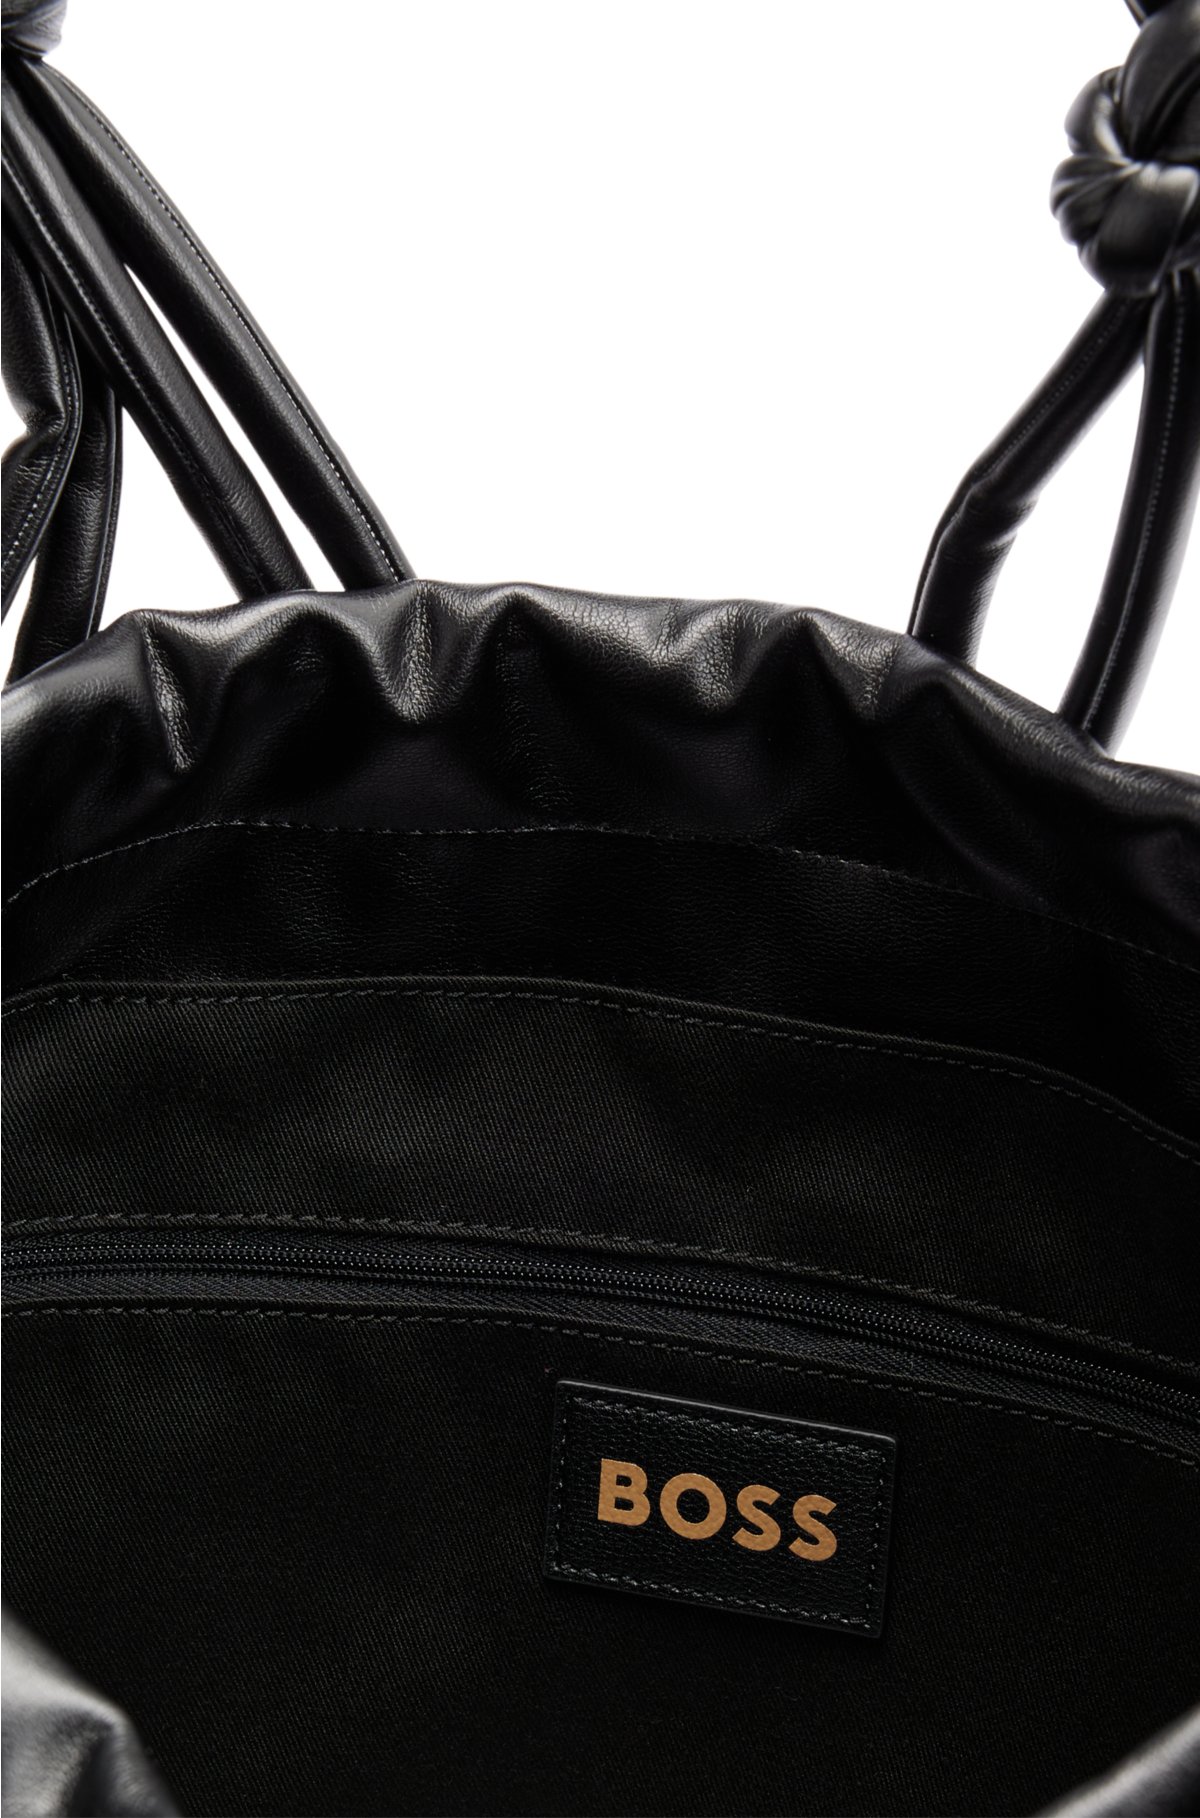 Black Leather-Look Embossed Logo Tote Bag